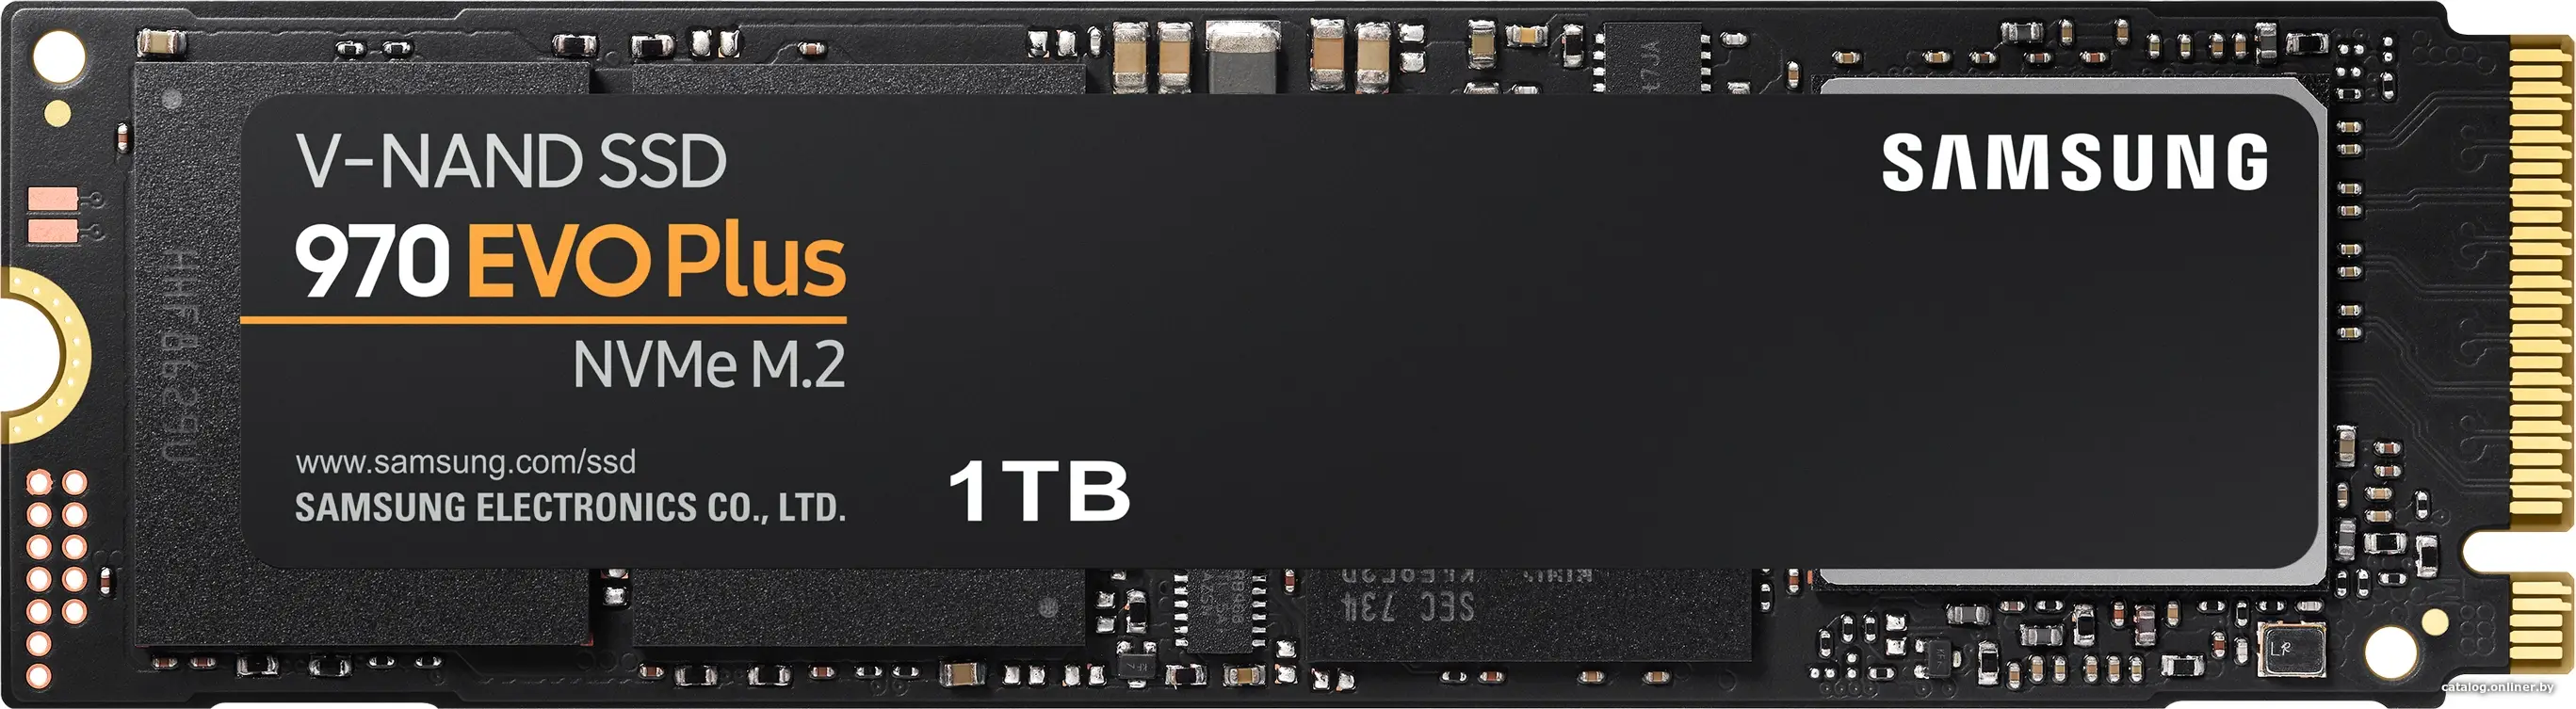 Купить SSD диск Samsung 970 Evo Plus 1TB (MZ-V7S1T0BW), цена, опт и розница